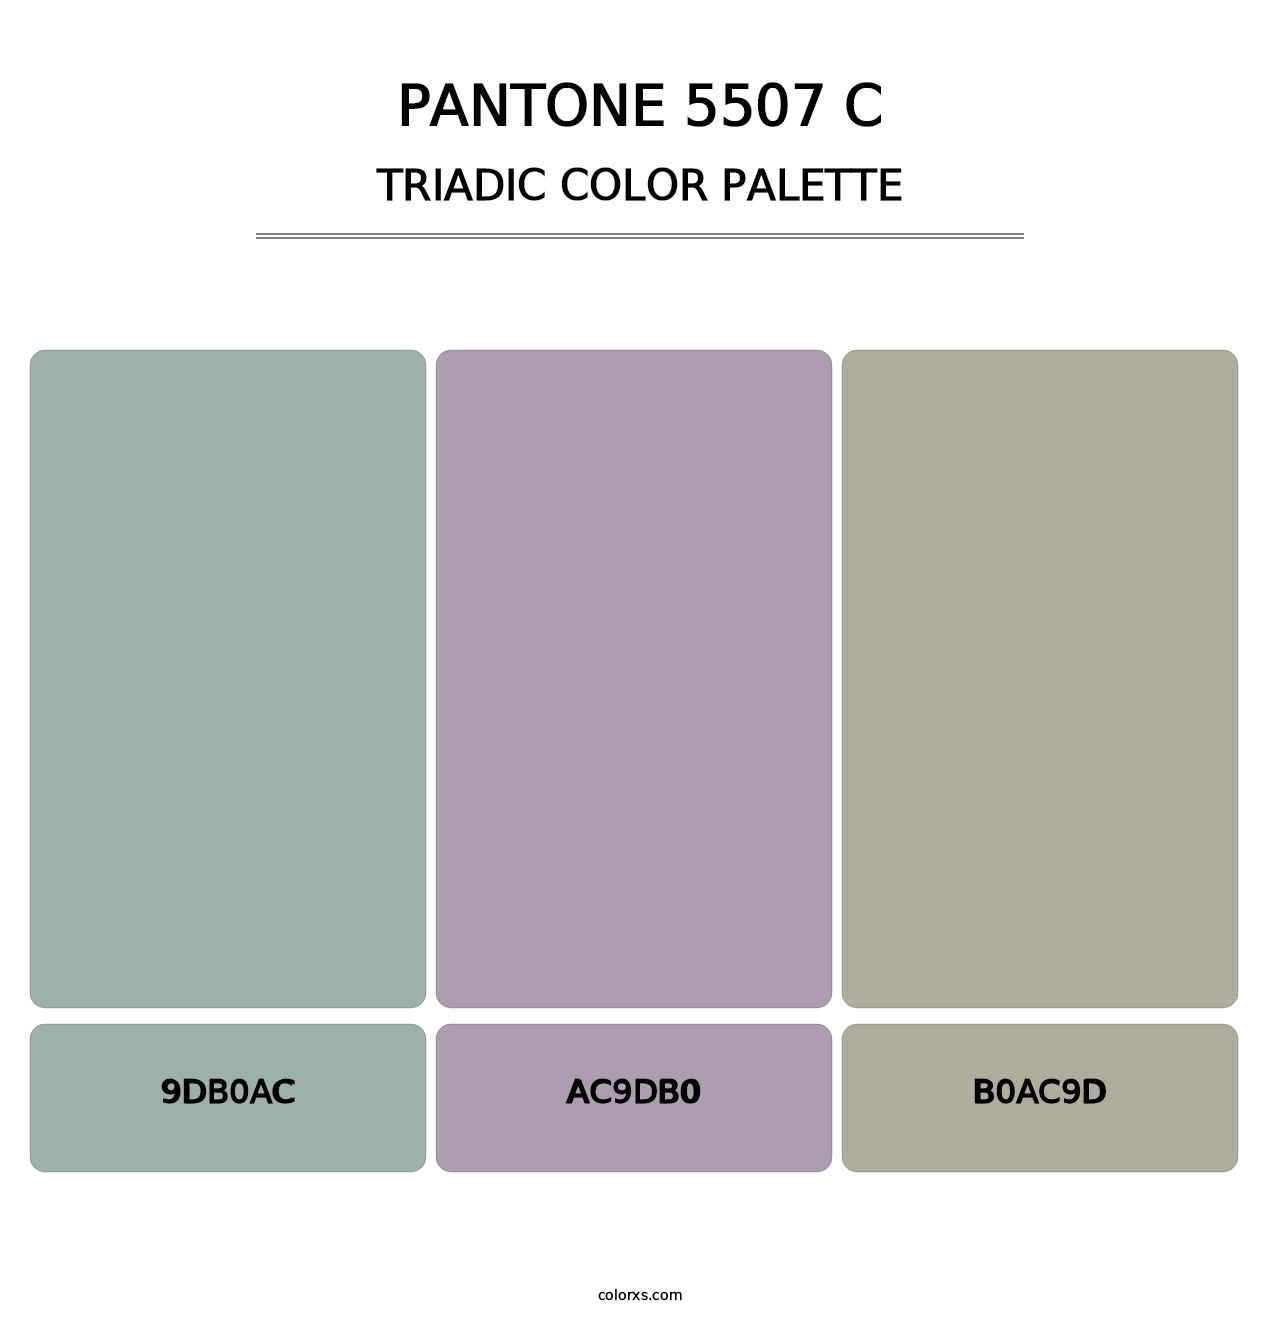 PANTONE 5507 C - Triadic Color Palette